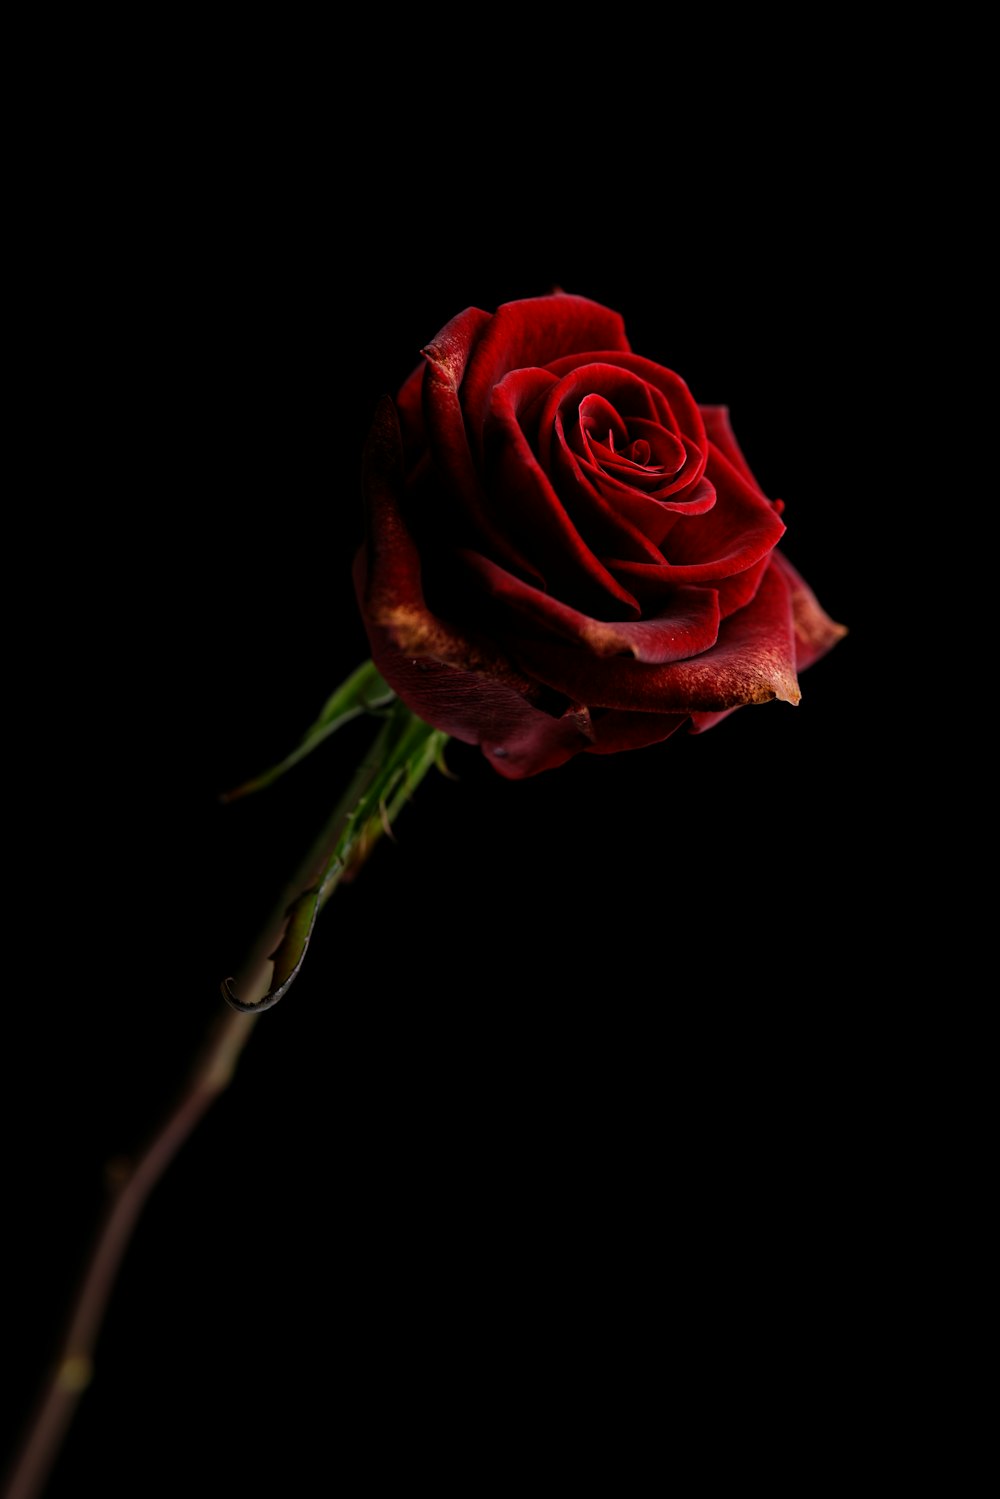 rosa rossa su sfondo nero